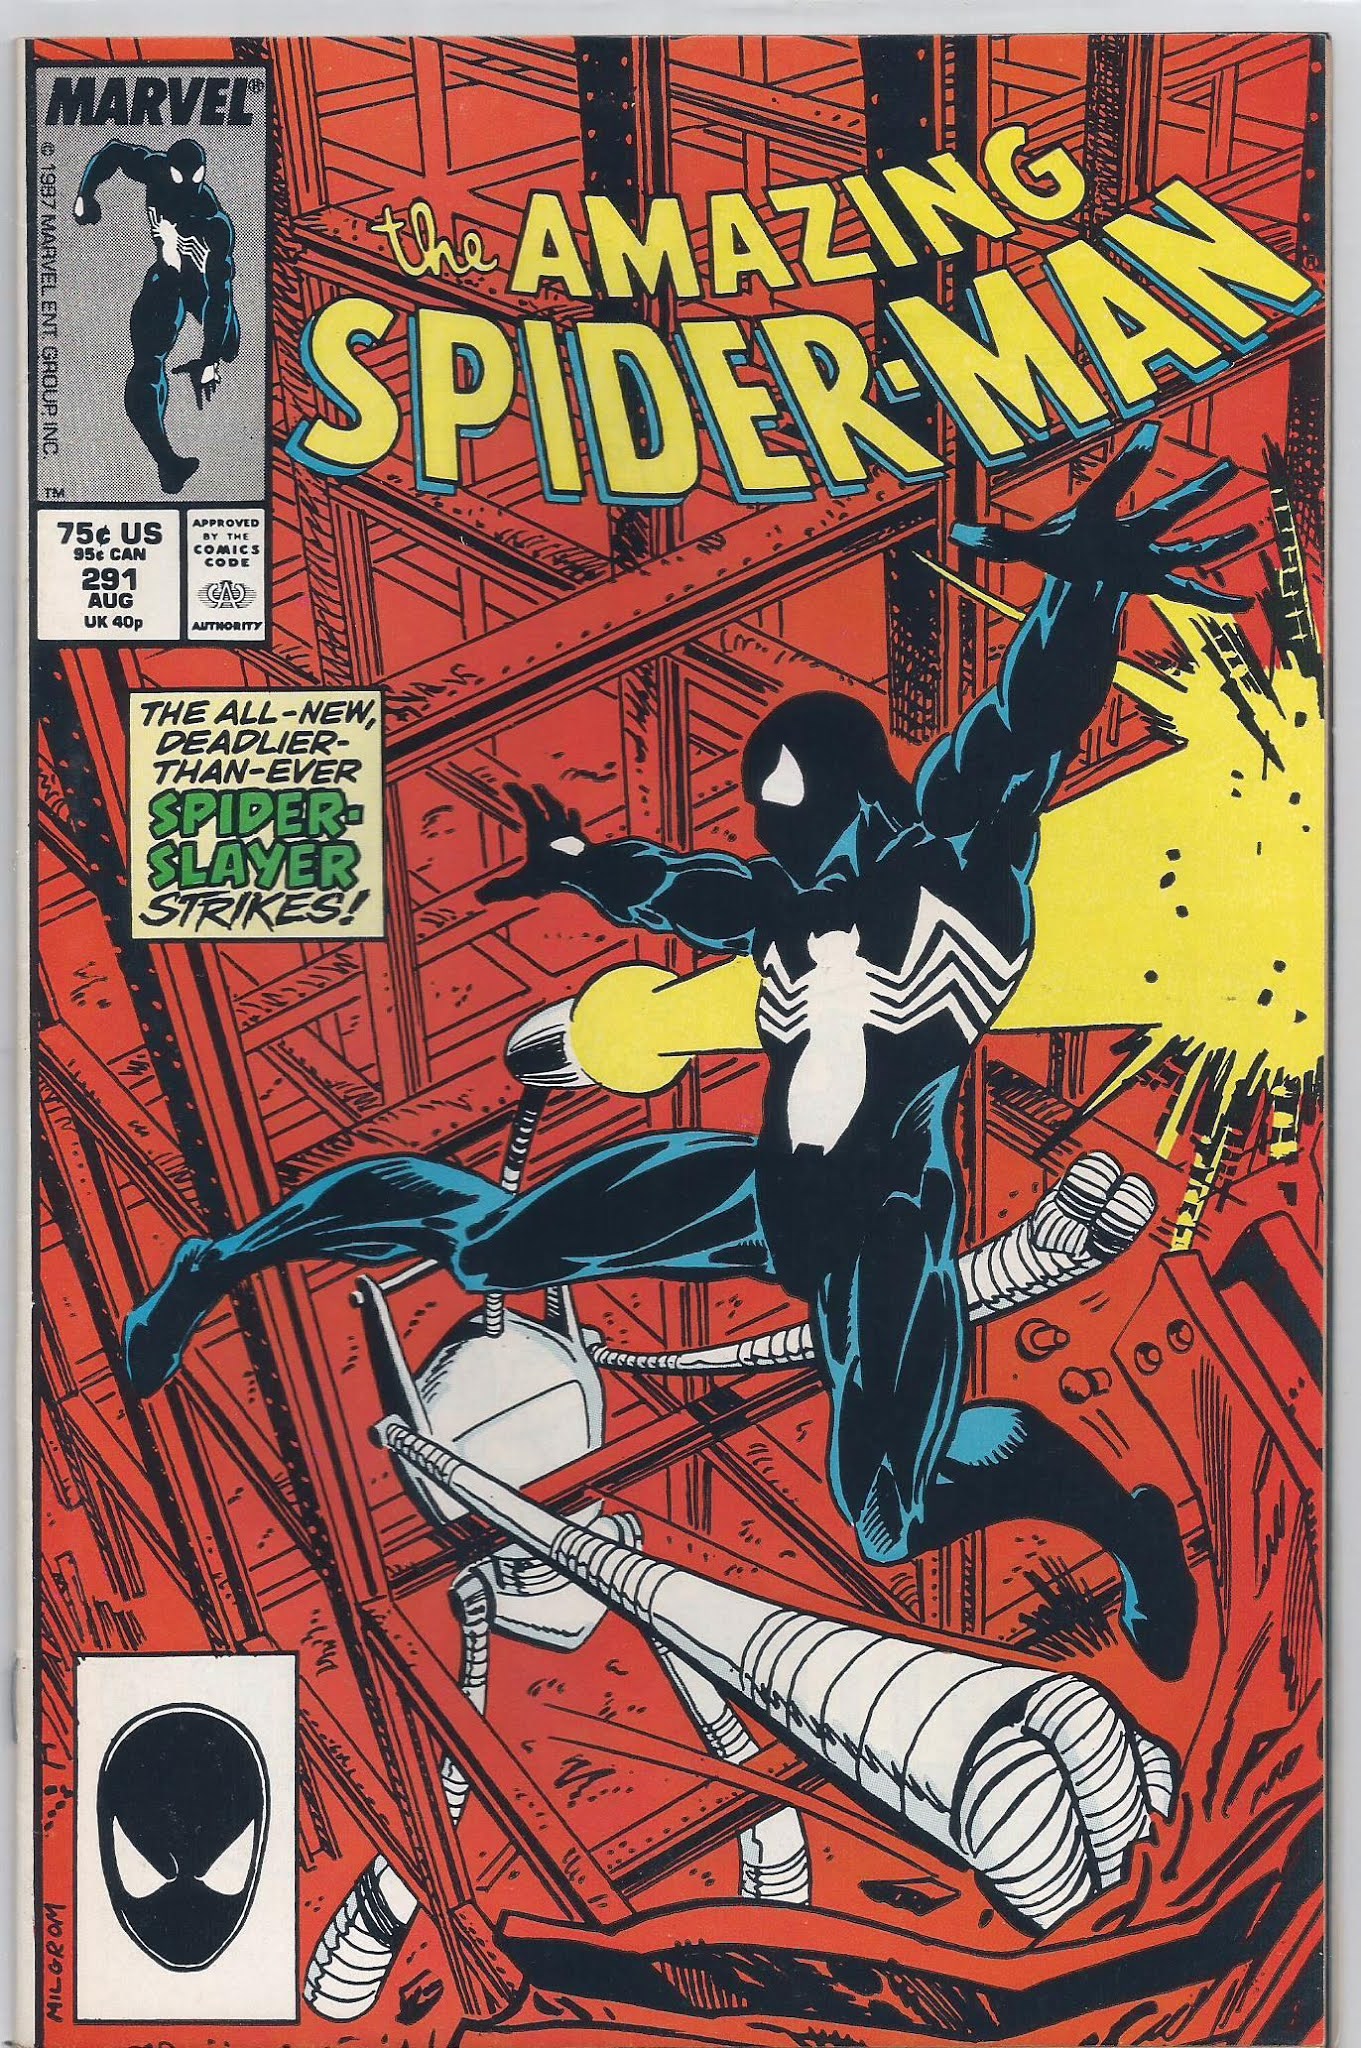 Спайдер комикс. Amazing Spider man 1 комикс. Spider man комиксы обложки. Эмейзинг человек паук комикс. Первый комикс про человека паука.